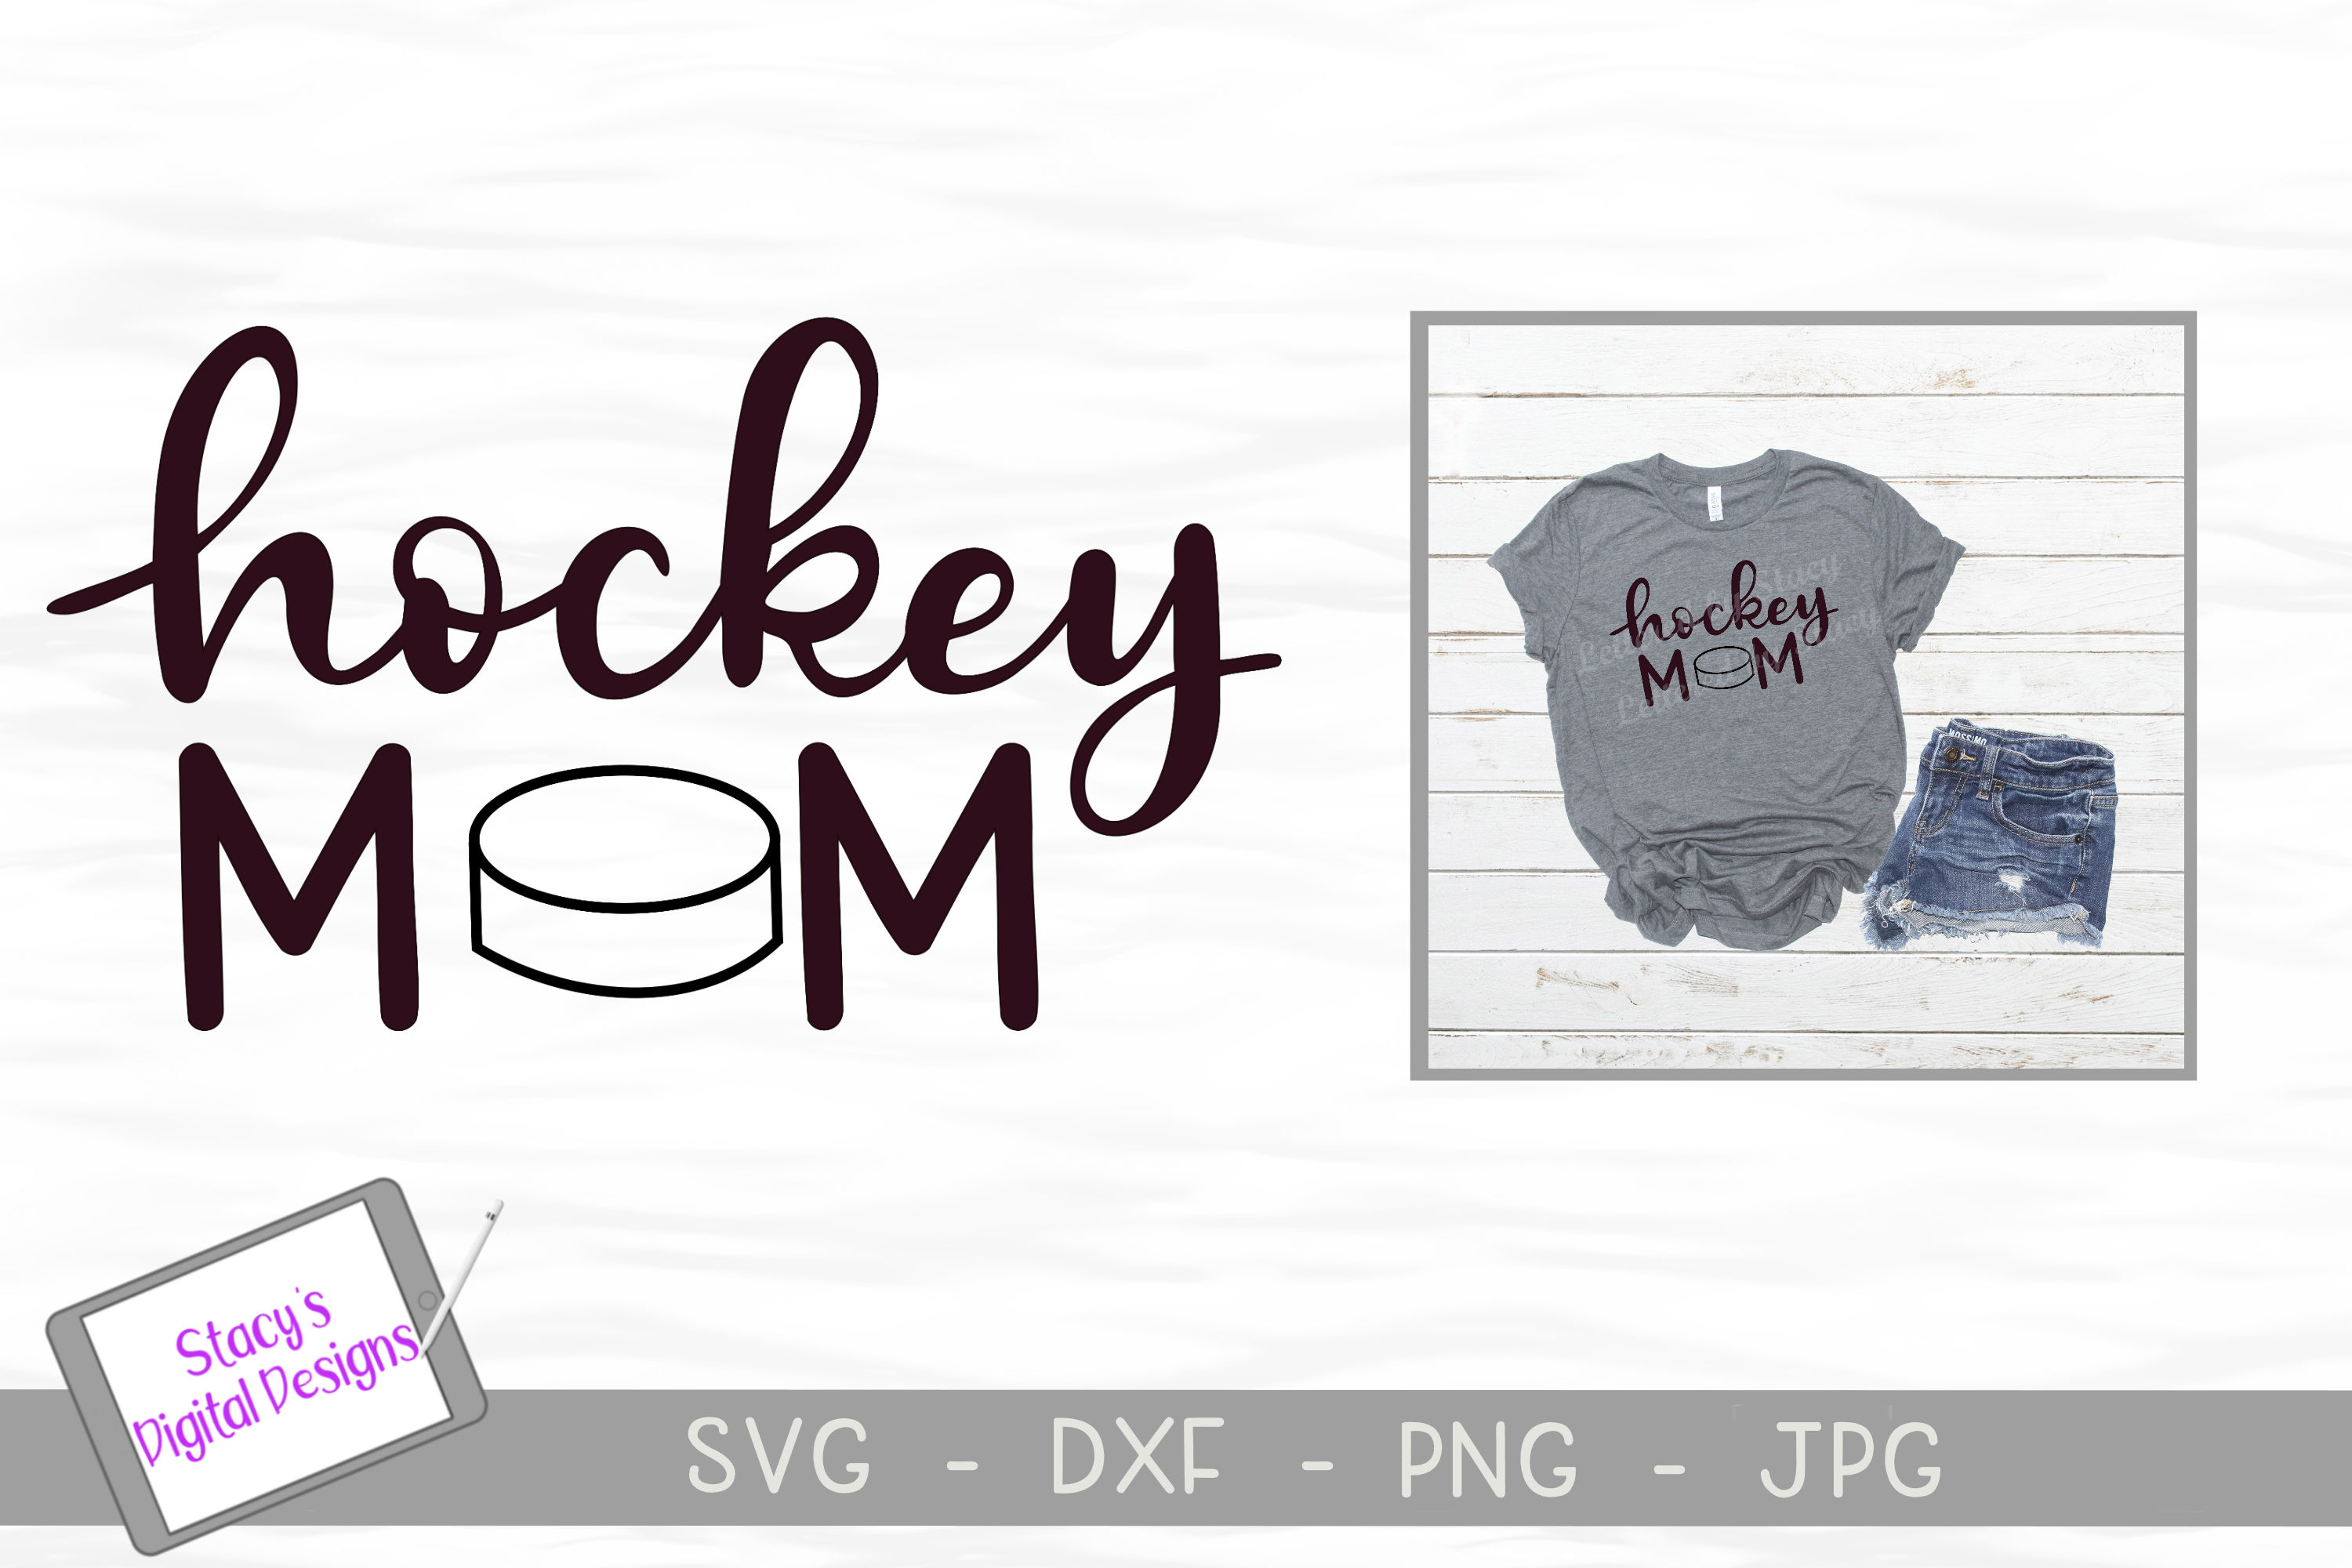 Download Hockey mom SVG - Sports mom SVG file, handlettered